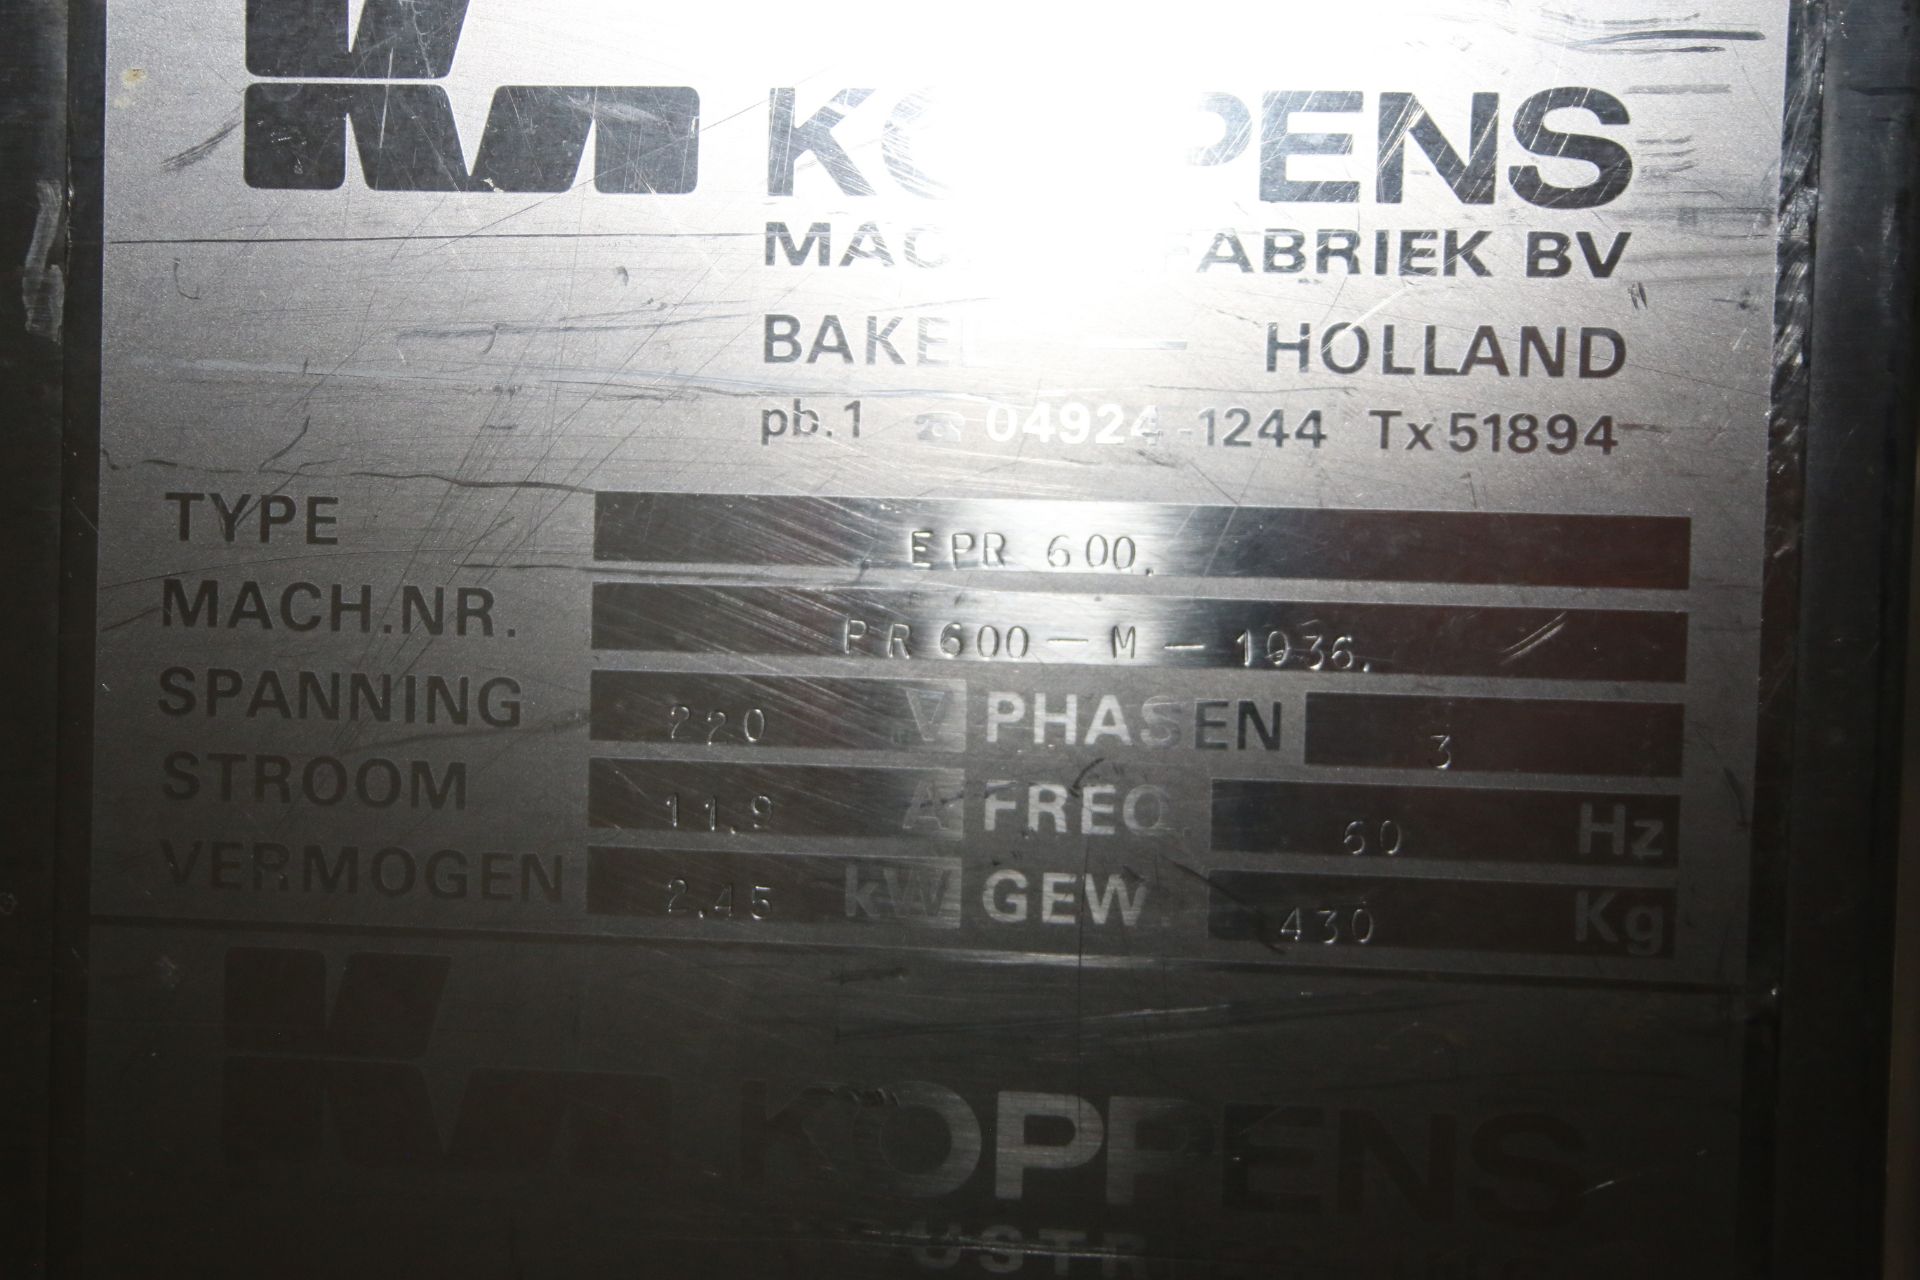 Koppens Batter/Breader, Type EPR600, Machine #: PR600-M-1036, 220 V, 3 Phase, Variable Speed - Image 9 of 14